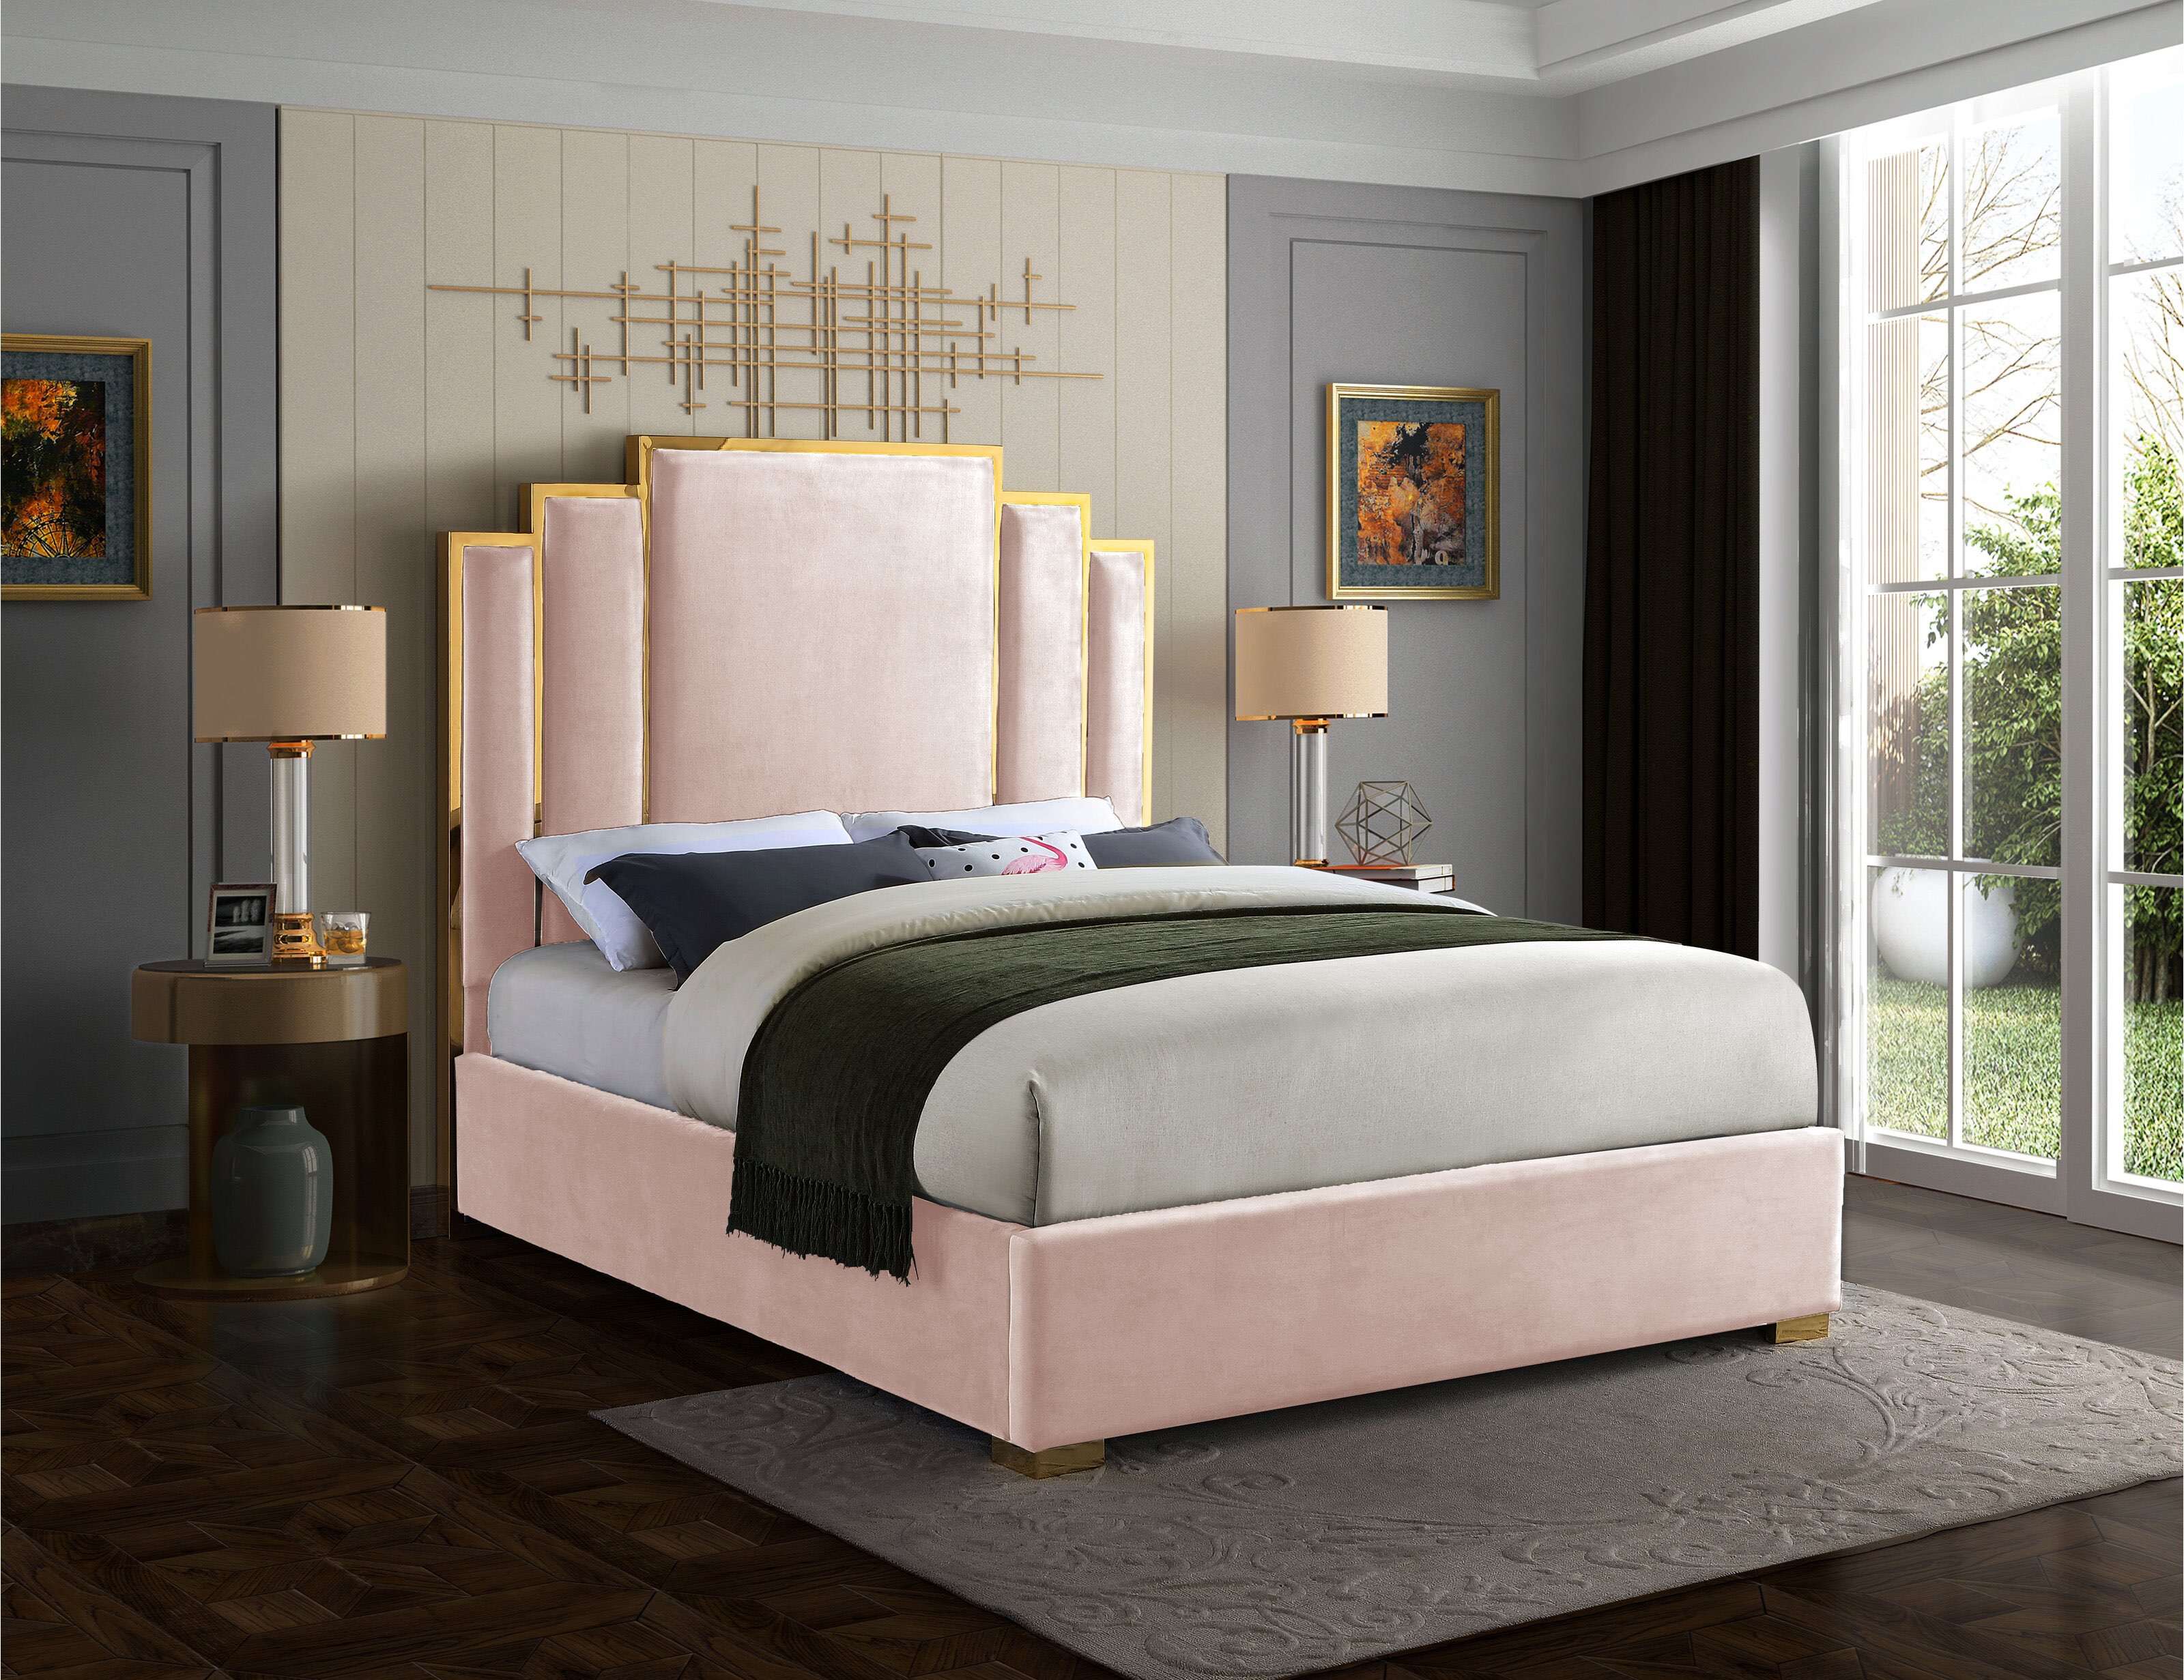 Luxury Beds Online